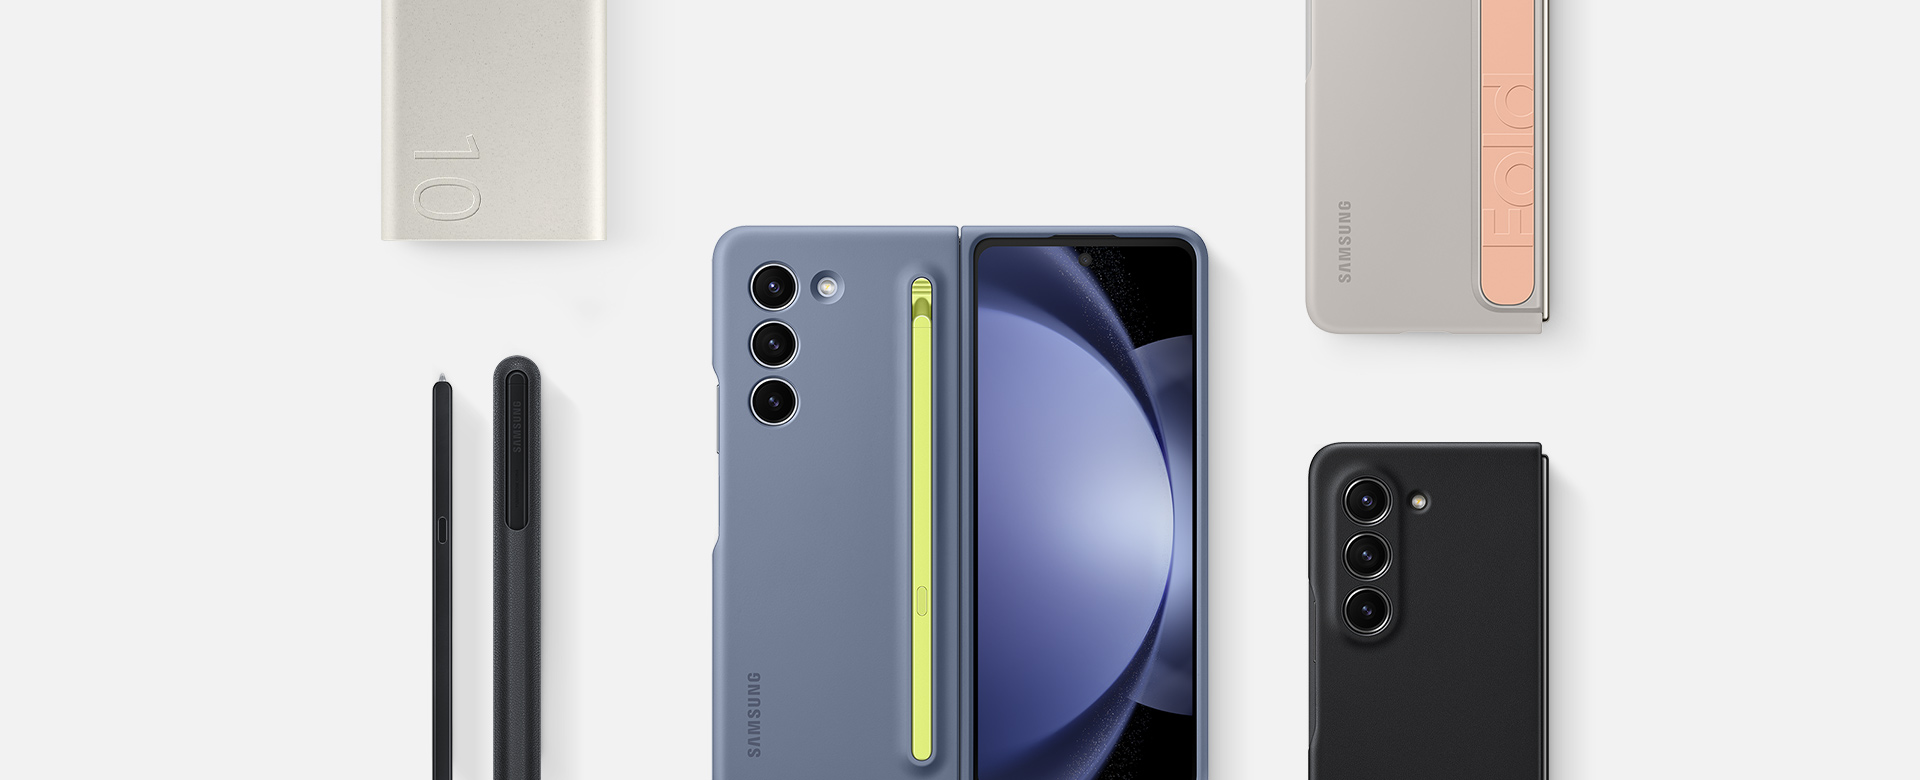 We zien het bovenaanzicht van diverse accessoires voor de Galaxy Z Fold5: Battery Pack, S Pen Fold Edition voor de Galaxy Z Fold5 en drie toestellen met de volgende cases: een Slim S Pen Case in Icy Blue, Standing Case met Strap in Sand en een Eco-Leather Case in Black.